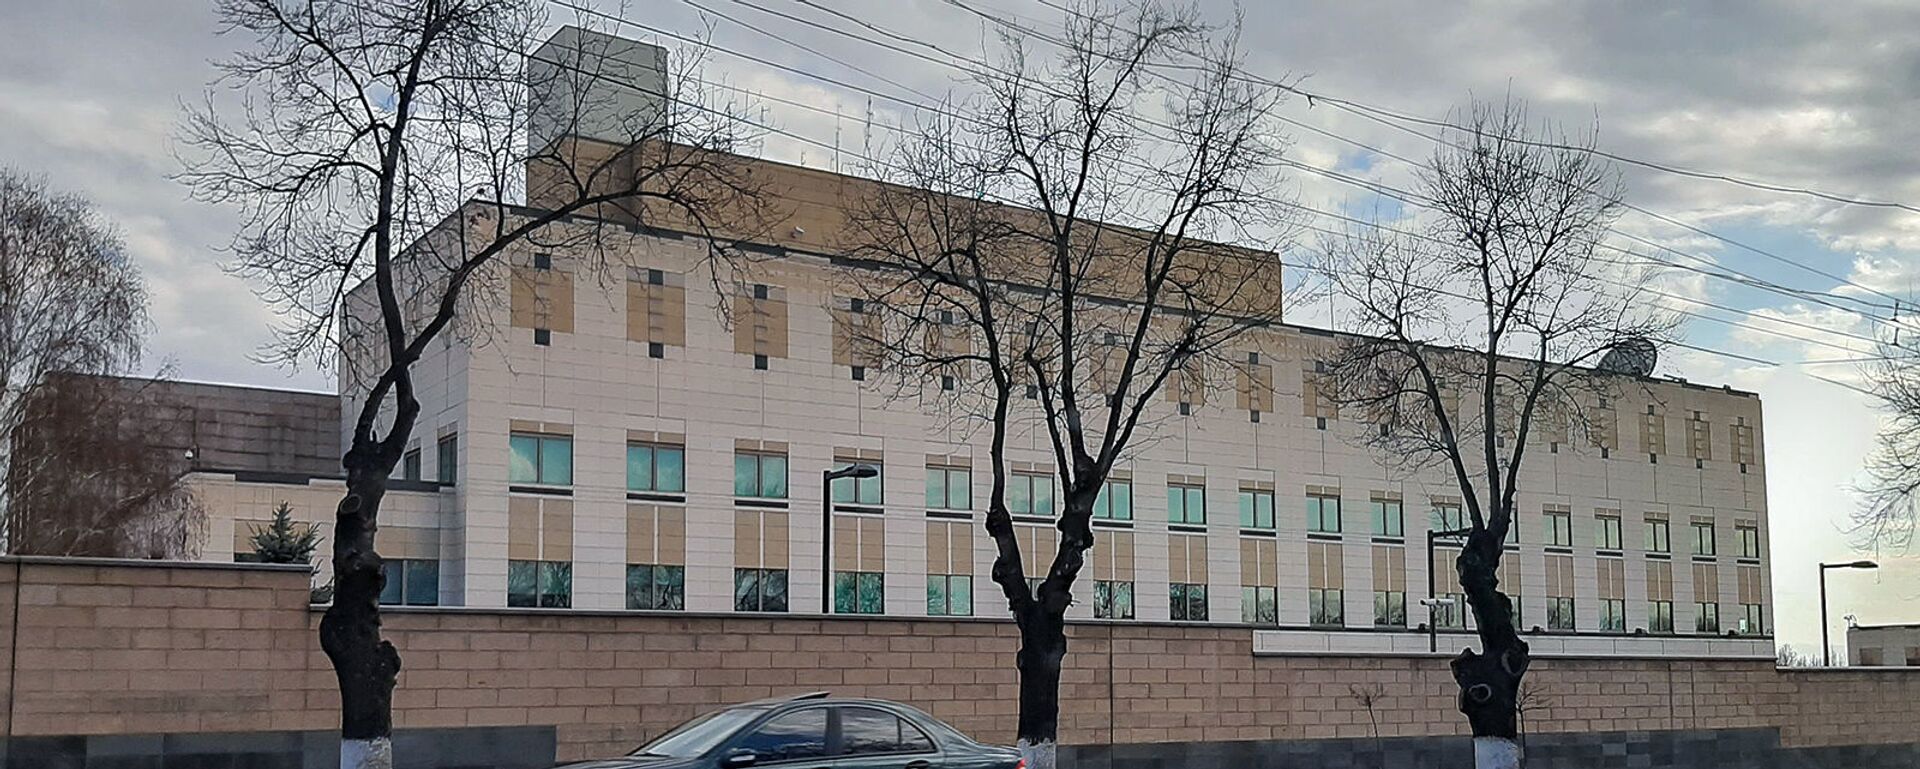 Здание посольства США в Армении - Sputnik Армения, 1920, 25.02.2021